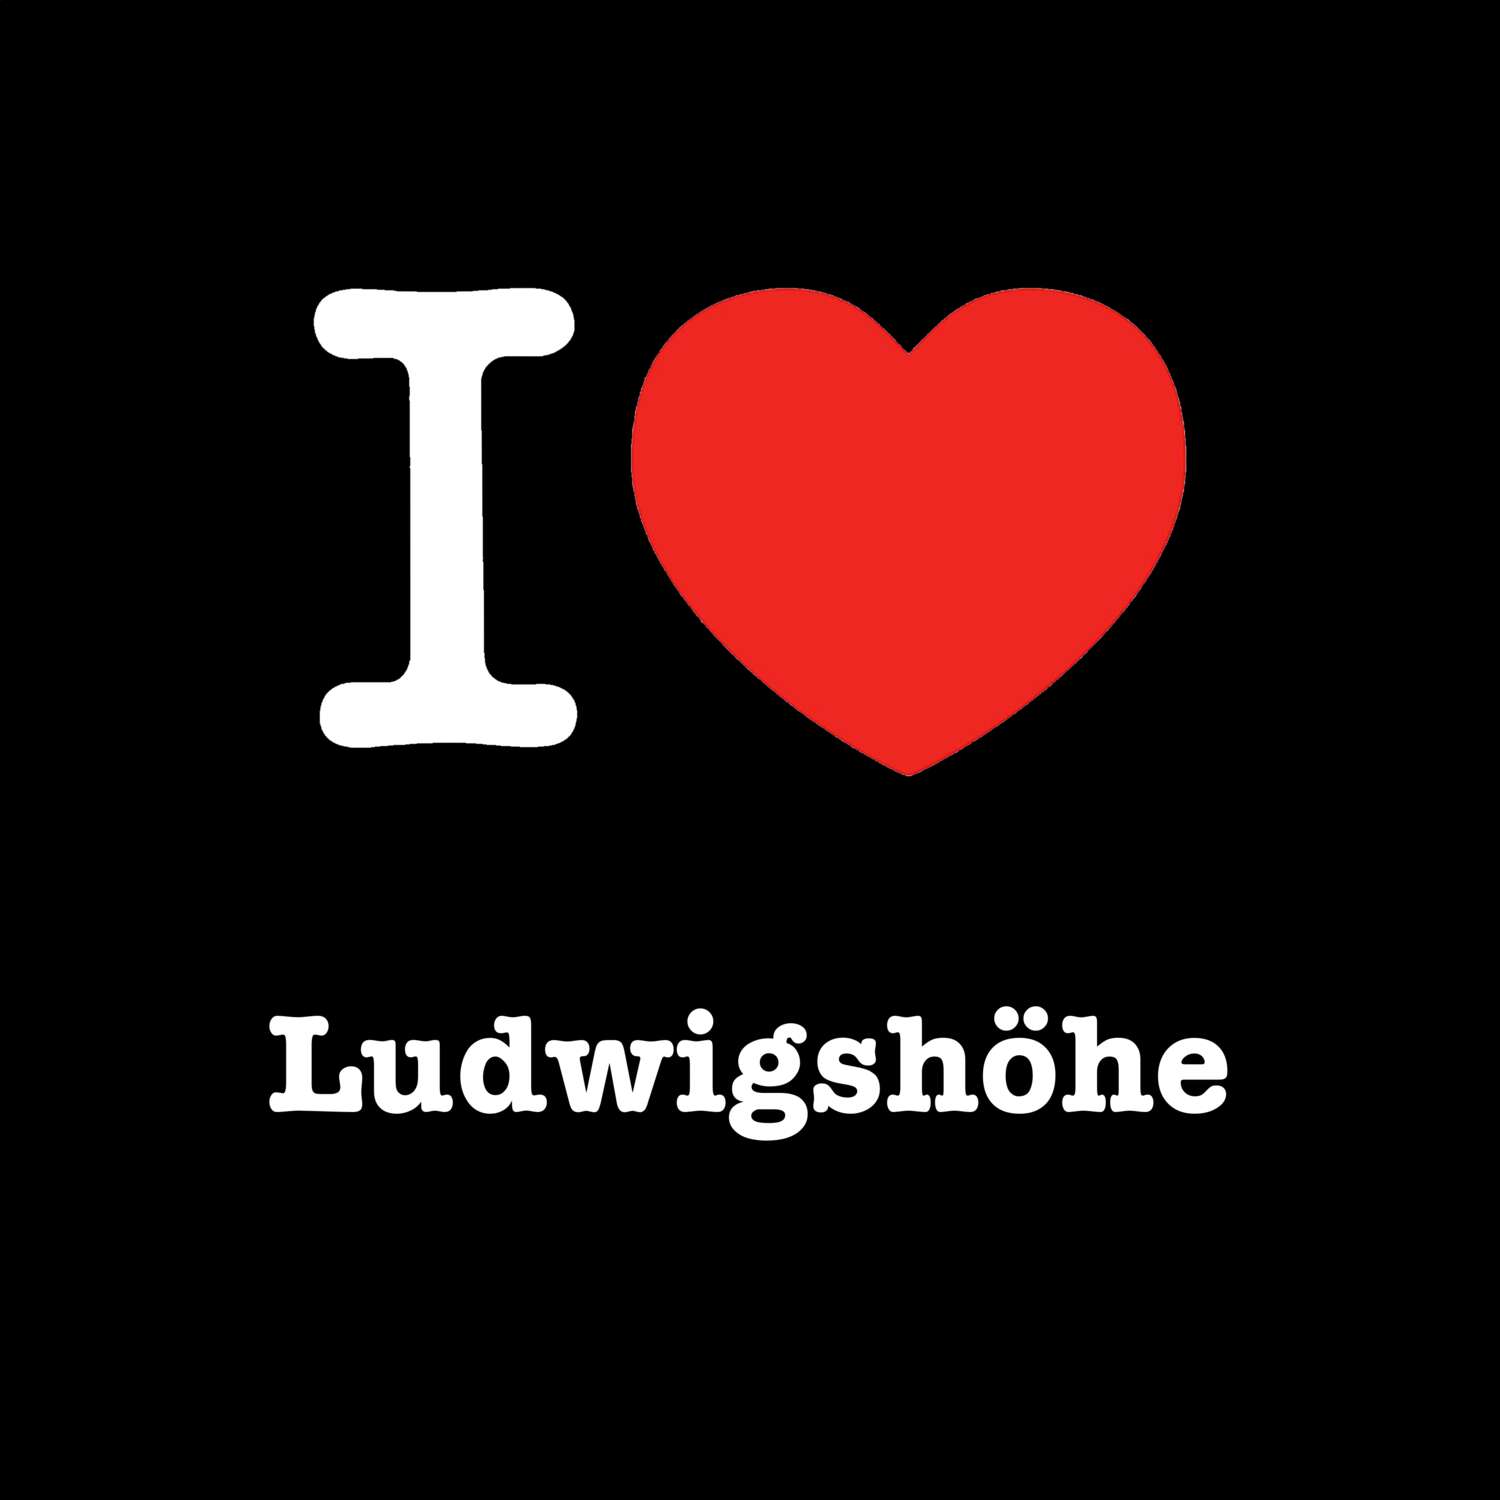 Ludwigshöhe T-Shirt »I love«